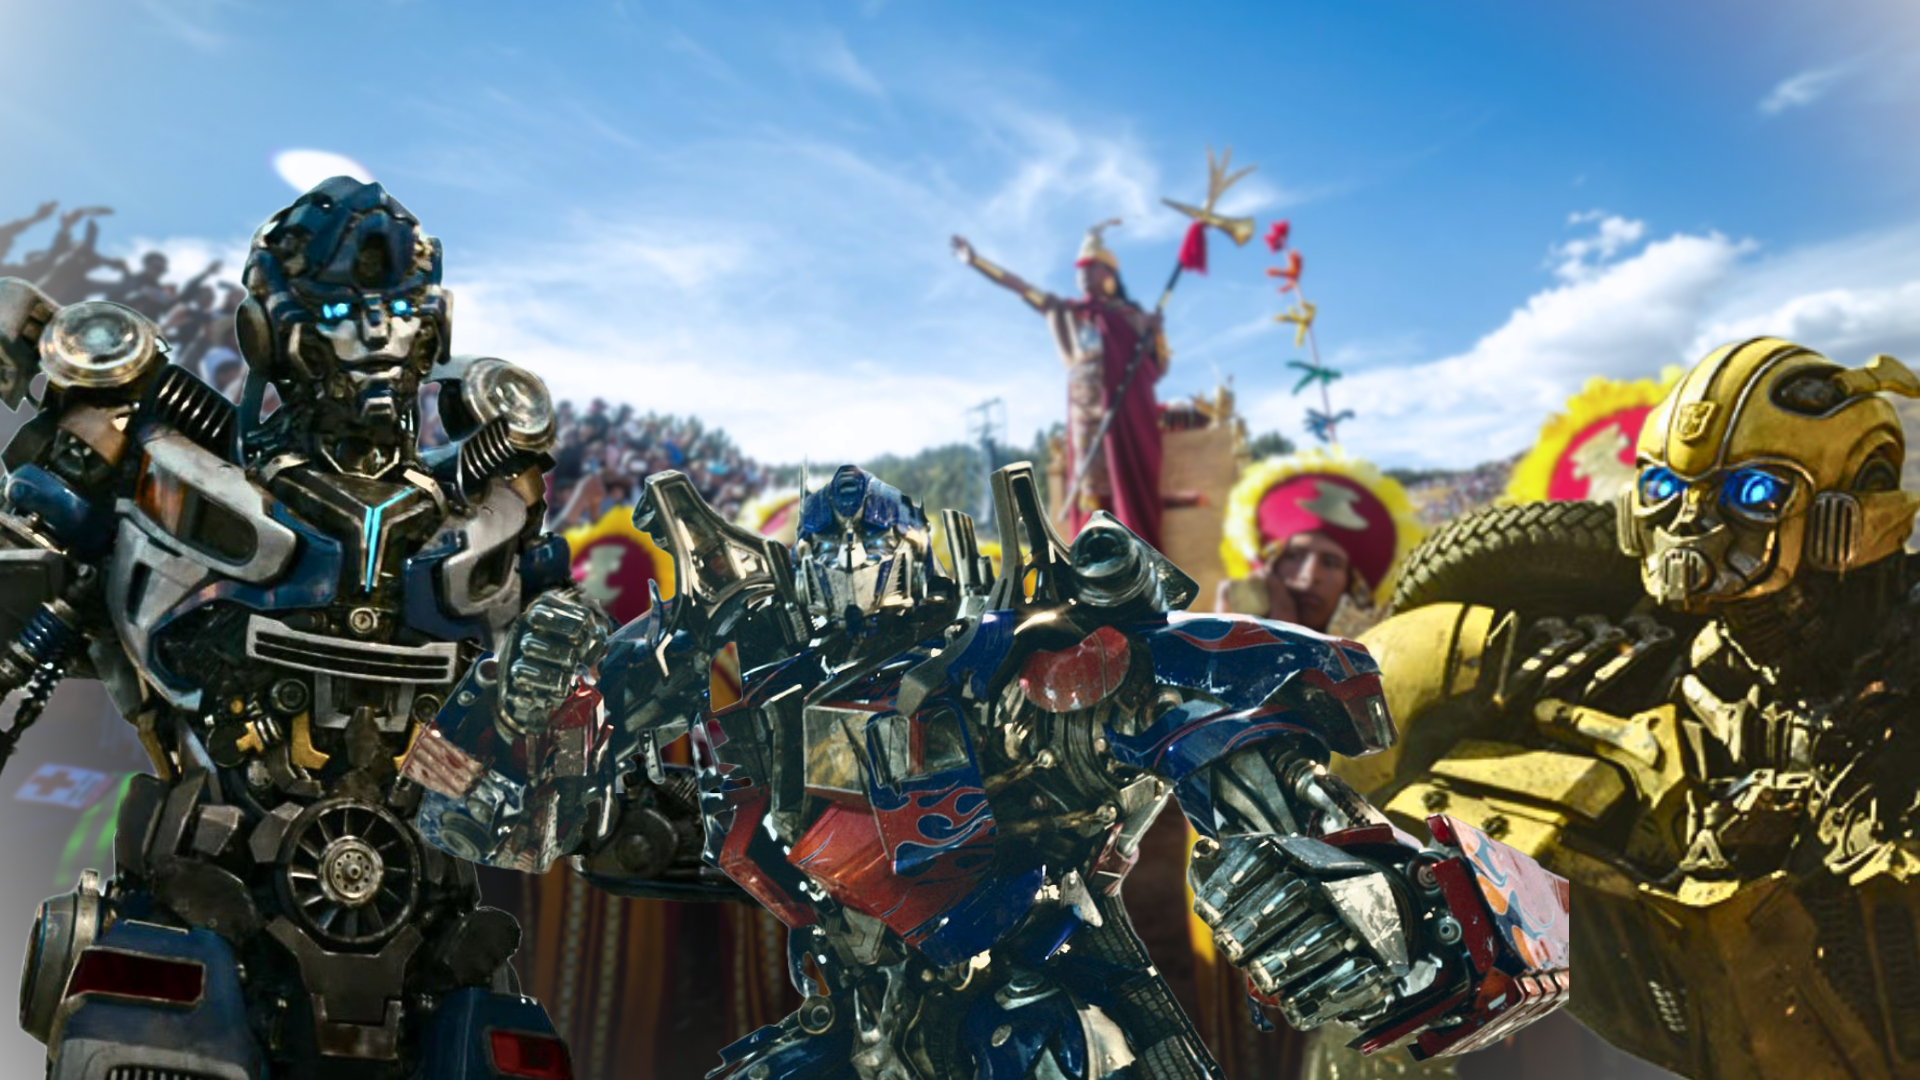 Funciones y costo de las entradas para ver ‘Transformers 7′ en el cine este sábado 10 de junio